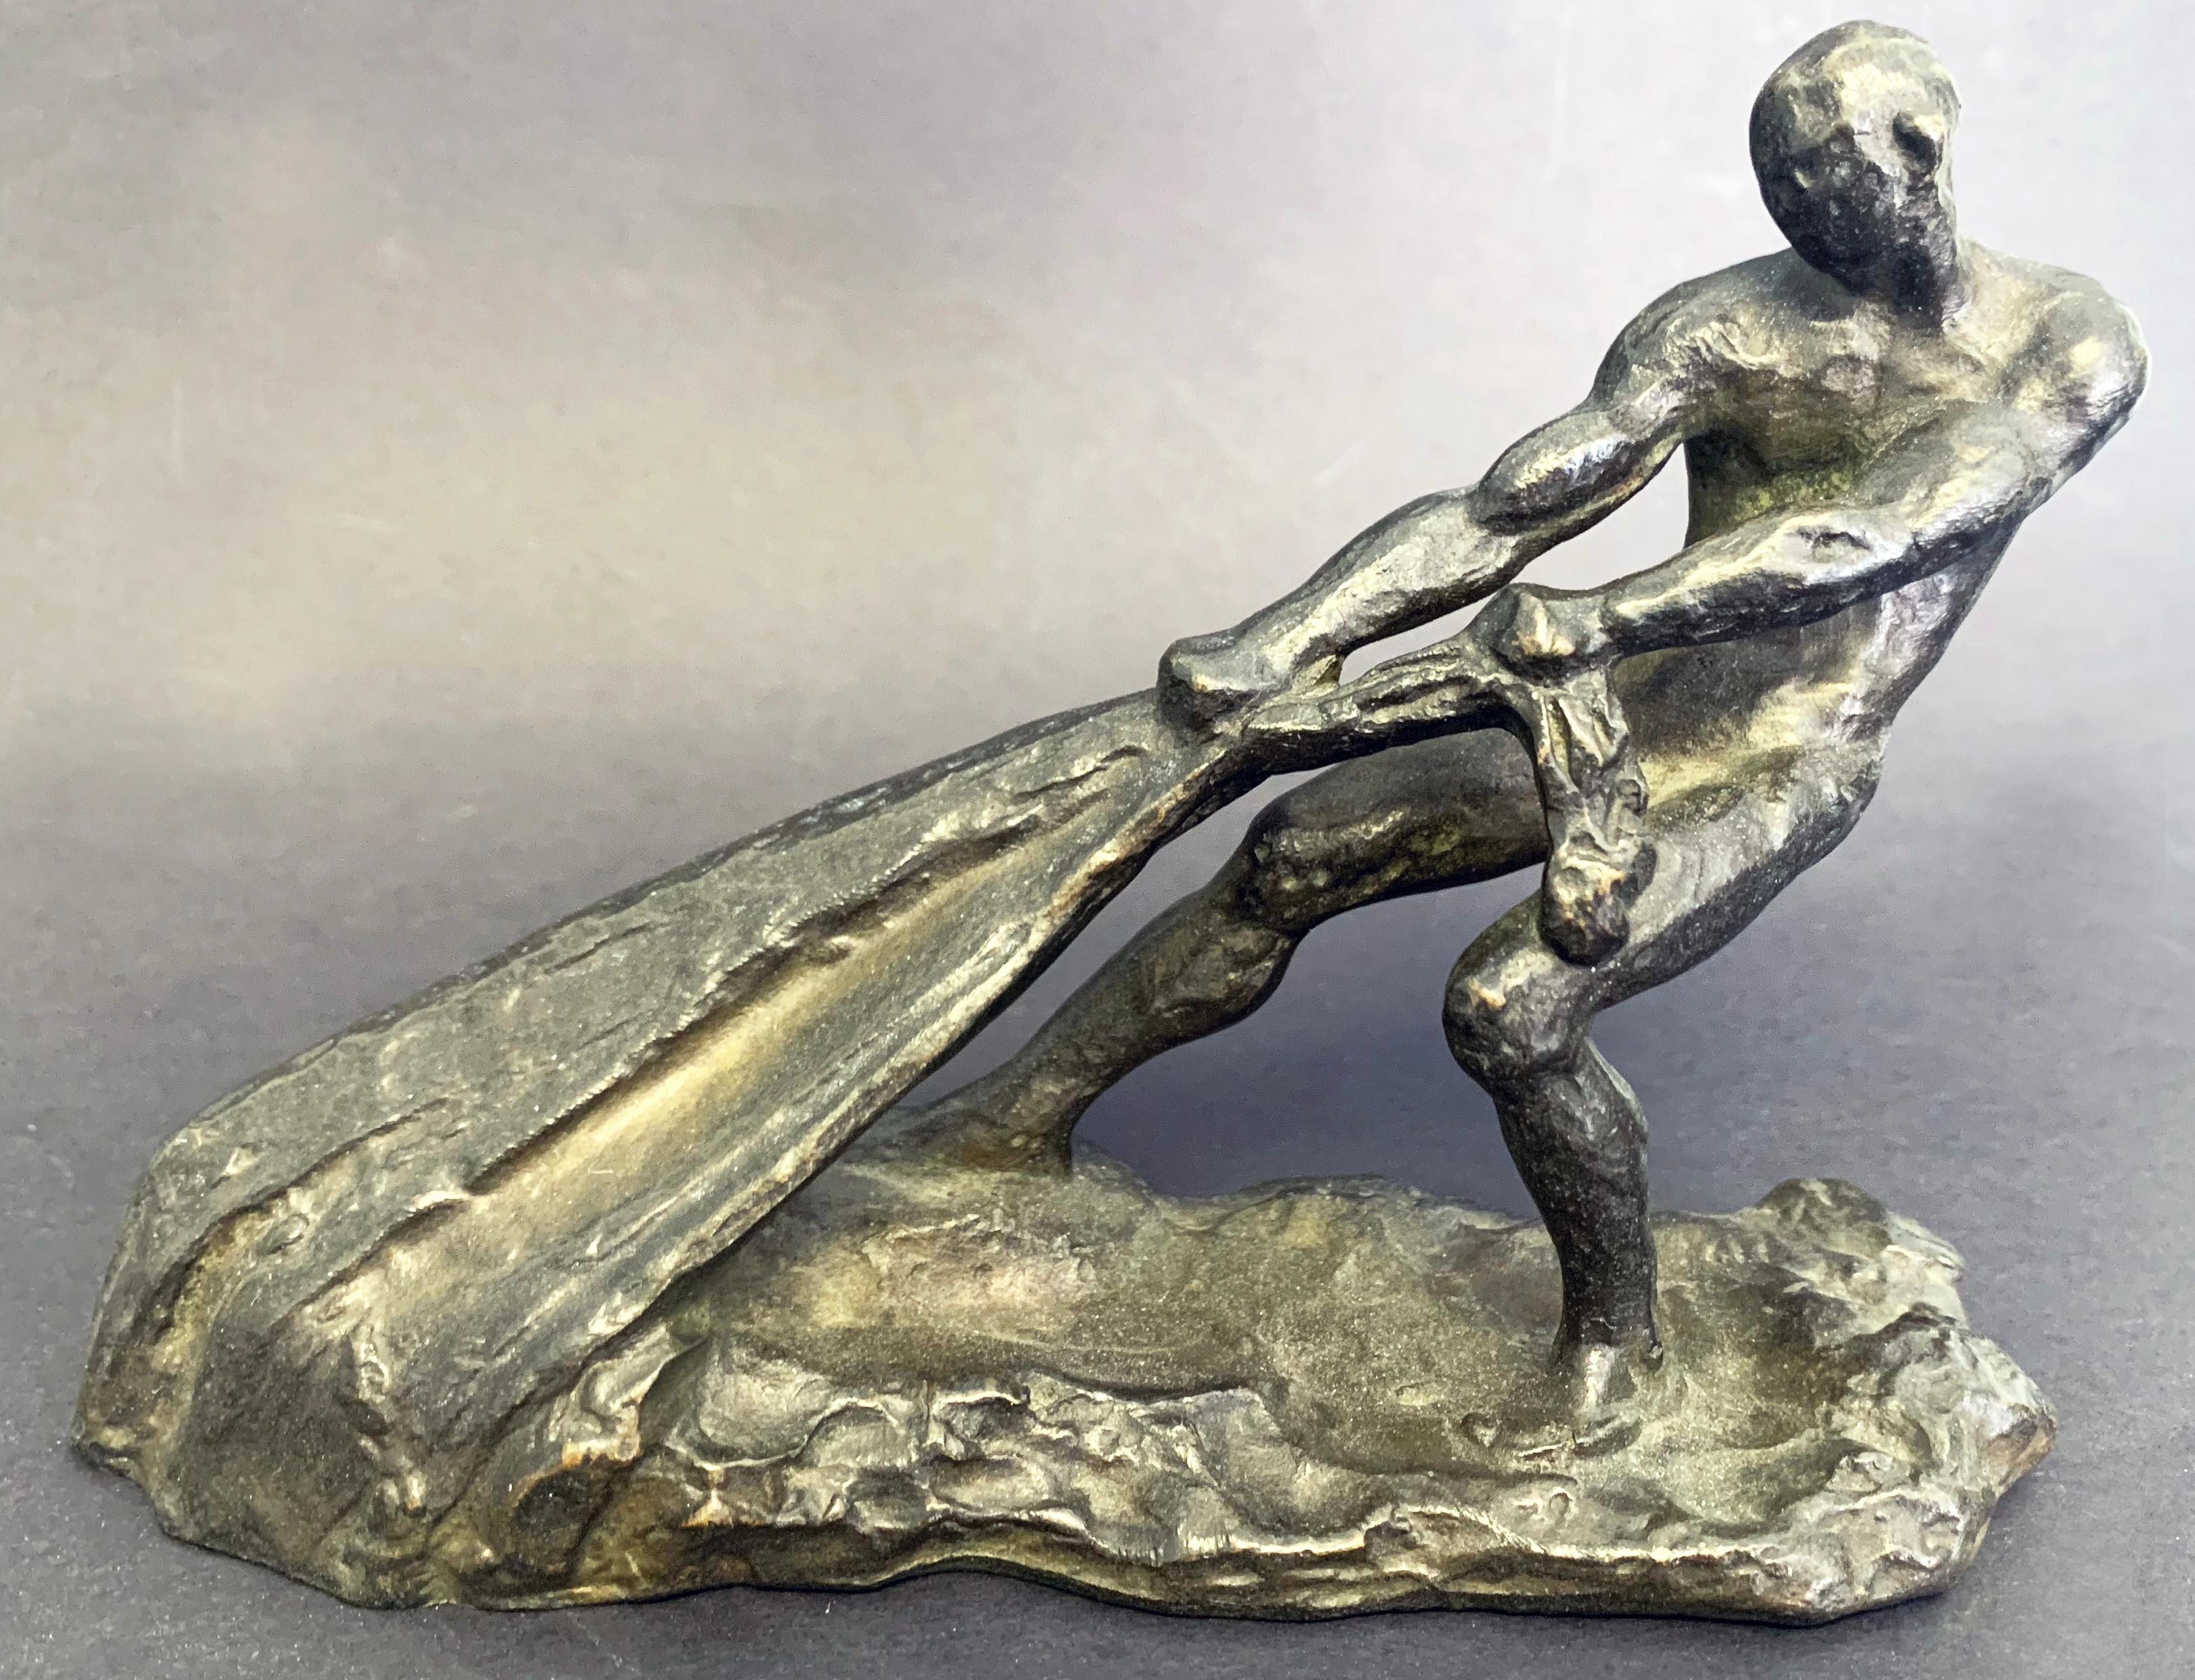 Ce bronze puissant - représentant un pêcheur nu remontant son filet - est un superbe exemple de sculpture Art déco influencée par l'accent mis par Auguste Rodin sur l'émotion et la physicalité de la figure humaine. Ici, la force et la musculature de